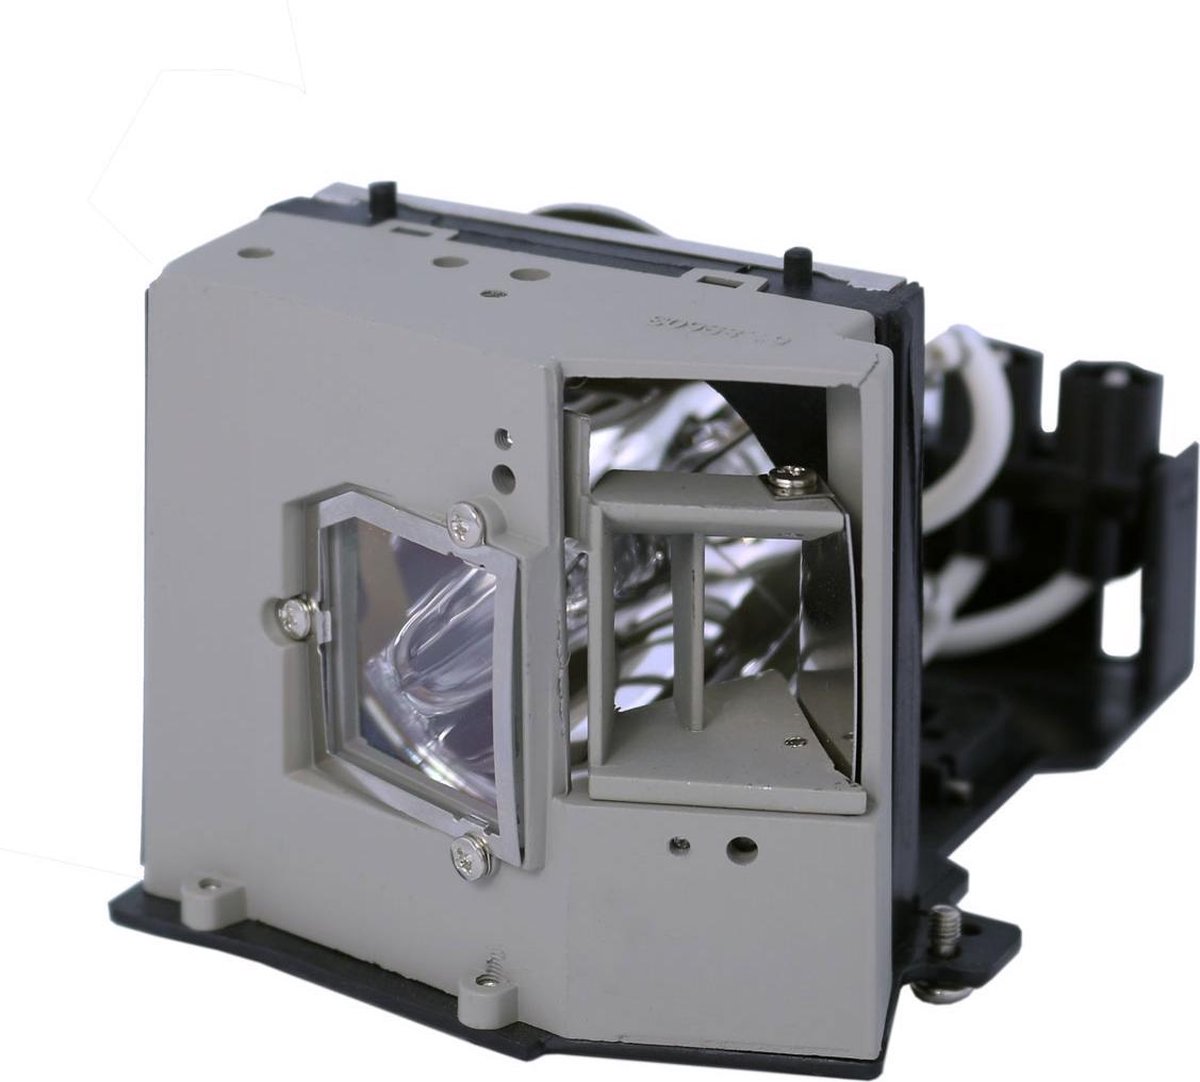 Beamerlamp geschikt voor de ACER PD726 beamer, lamp code EC.J2901.001. Bevat originele UHP lamp, prestaties gelijk aan origineel.